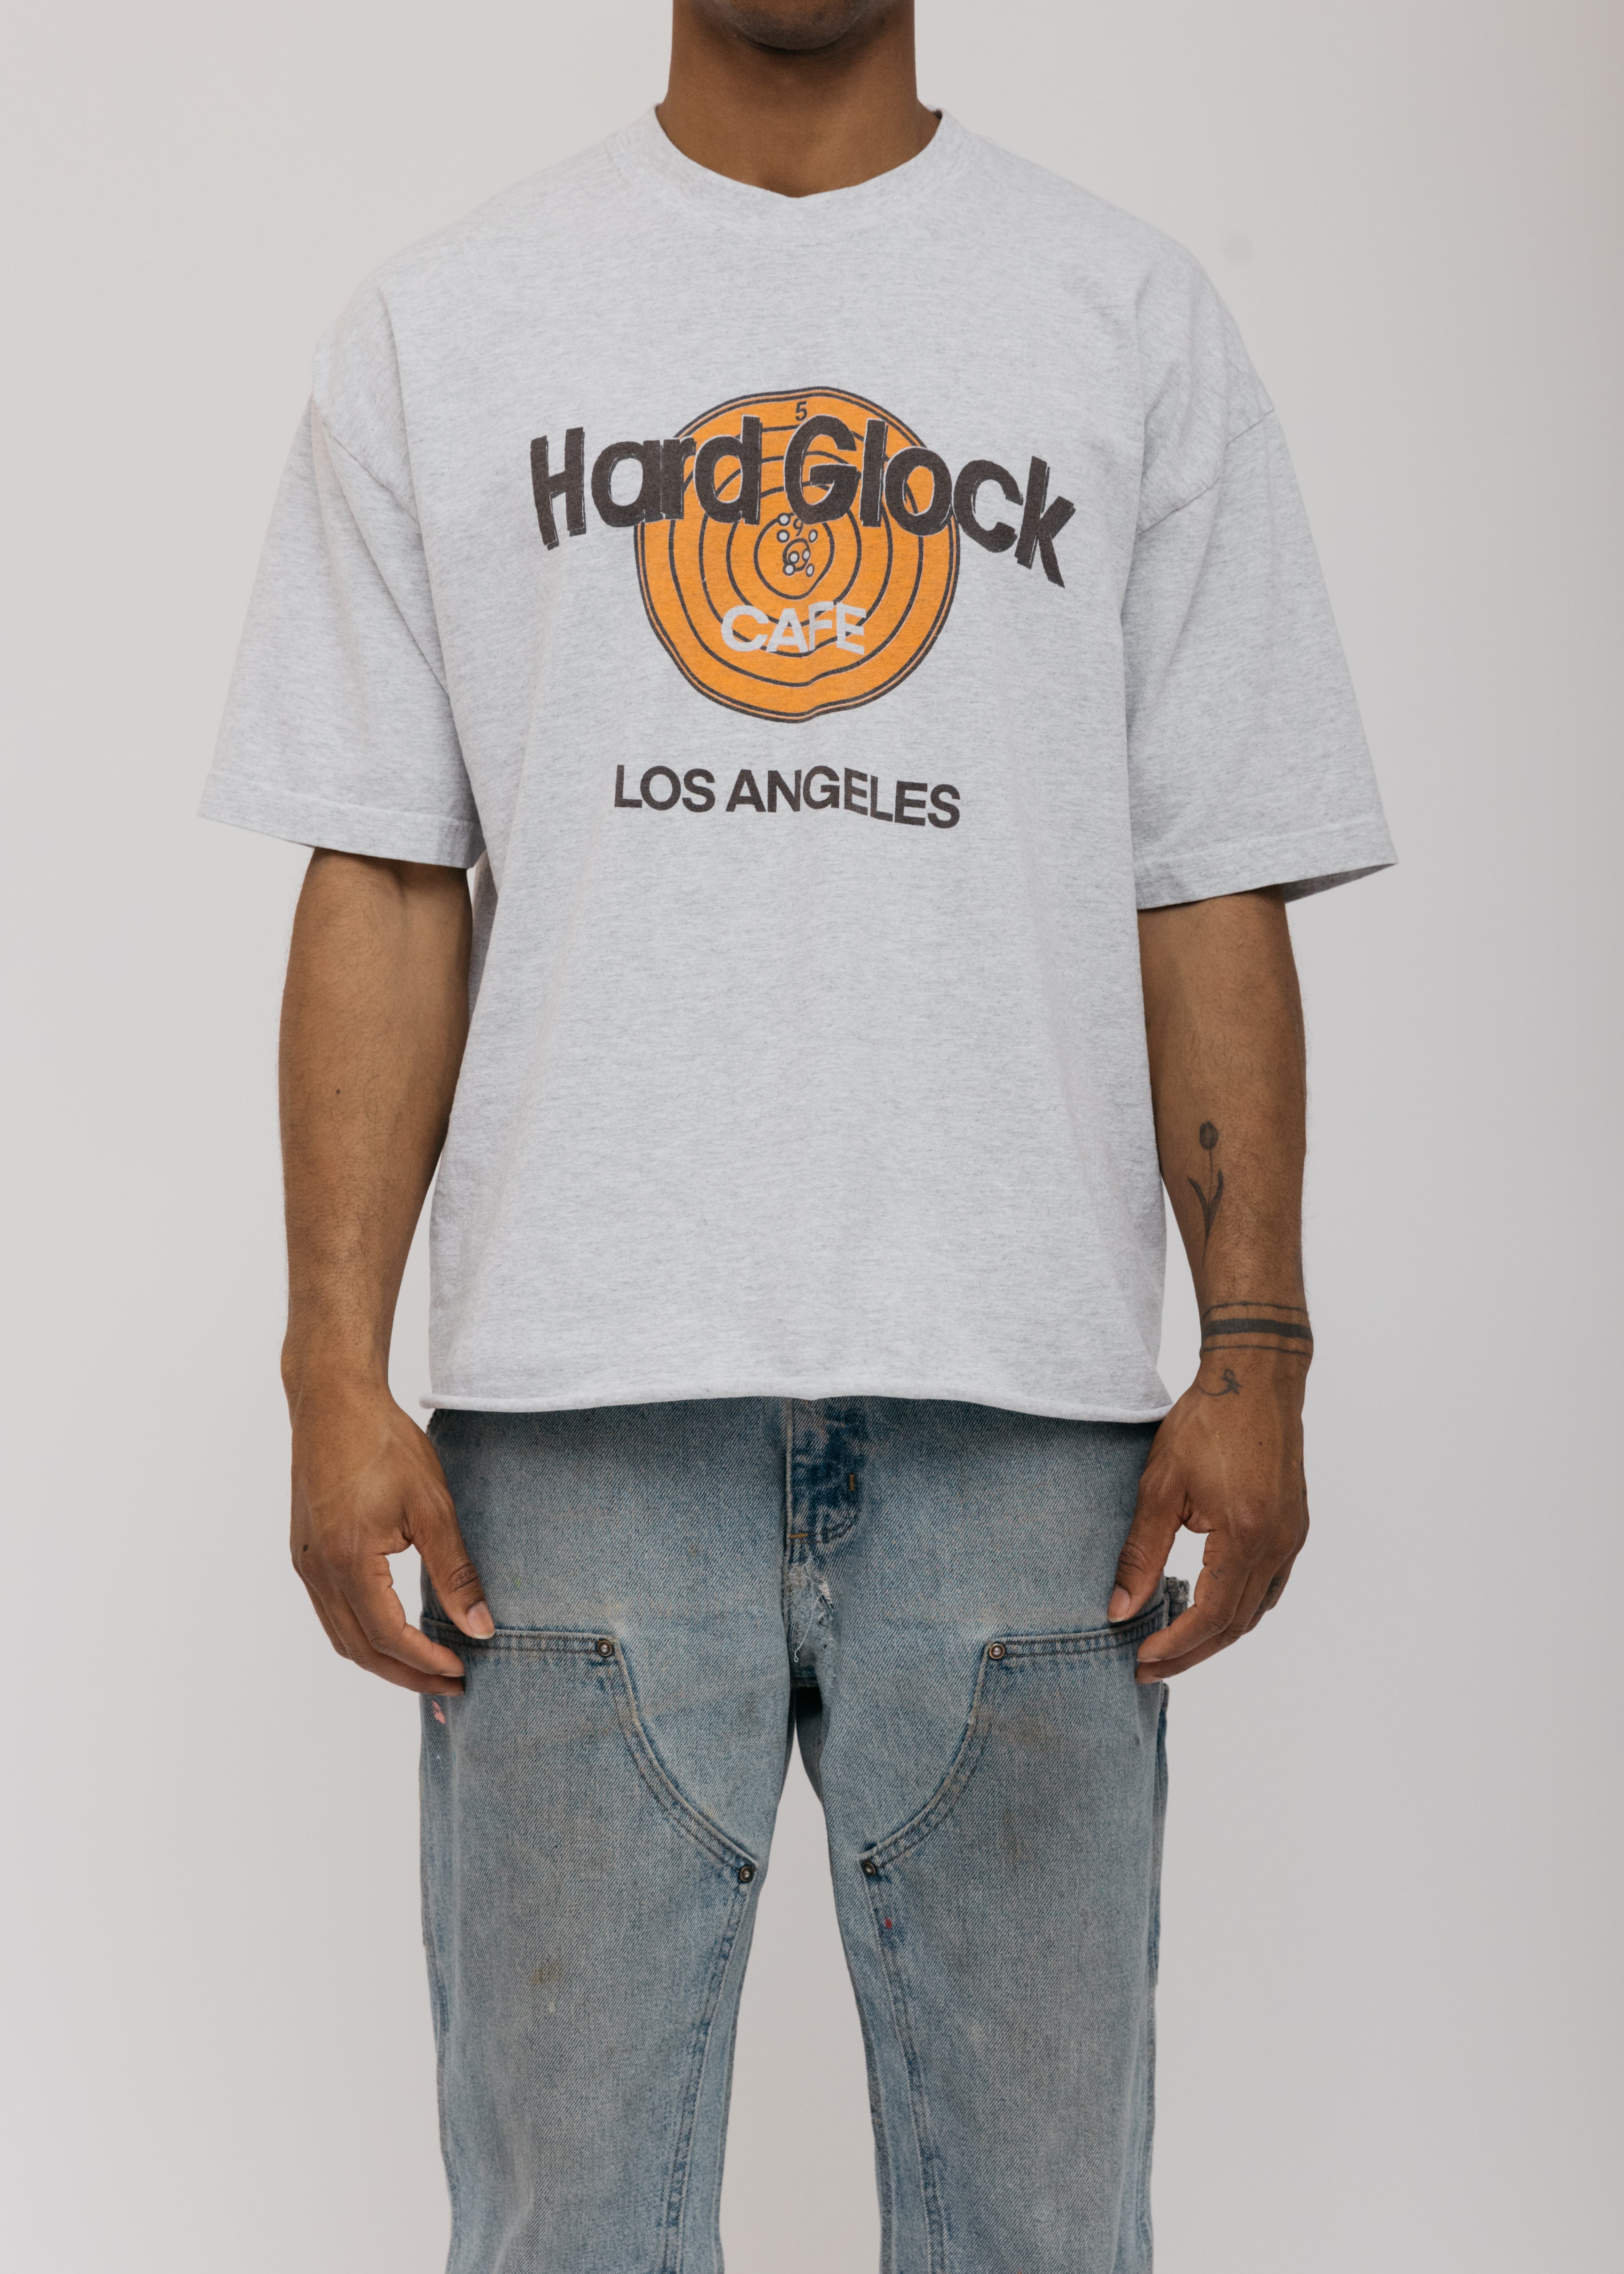 Hard Glock Cafe T-Shirt - Ash